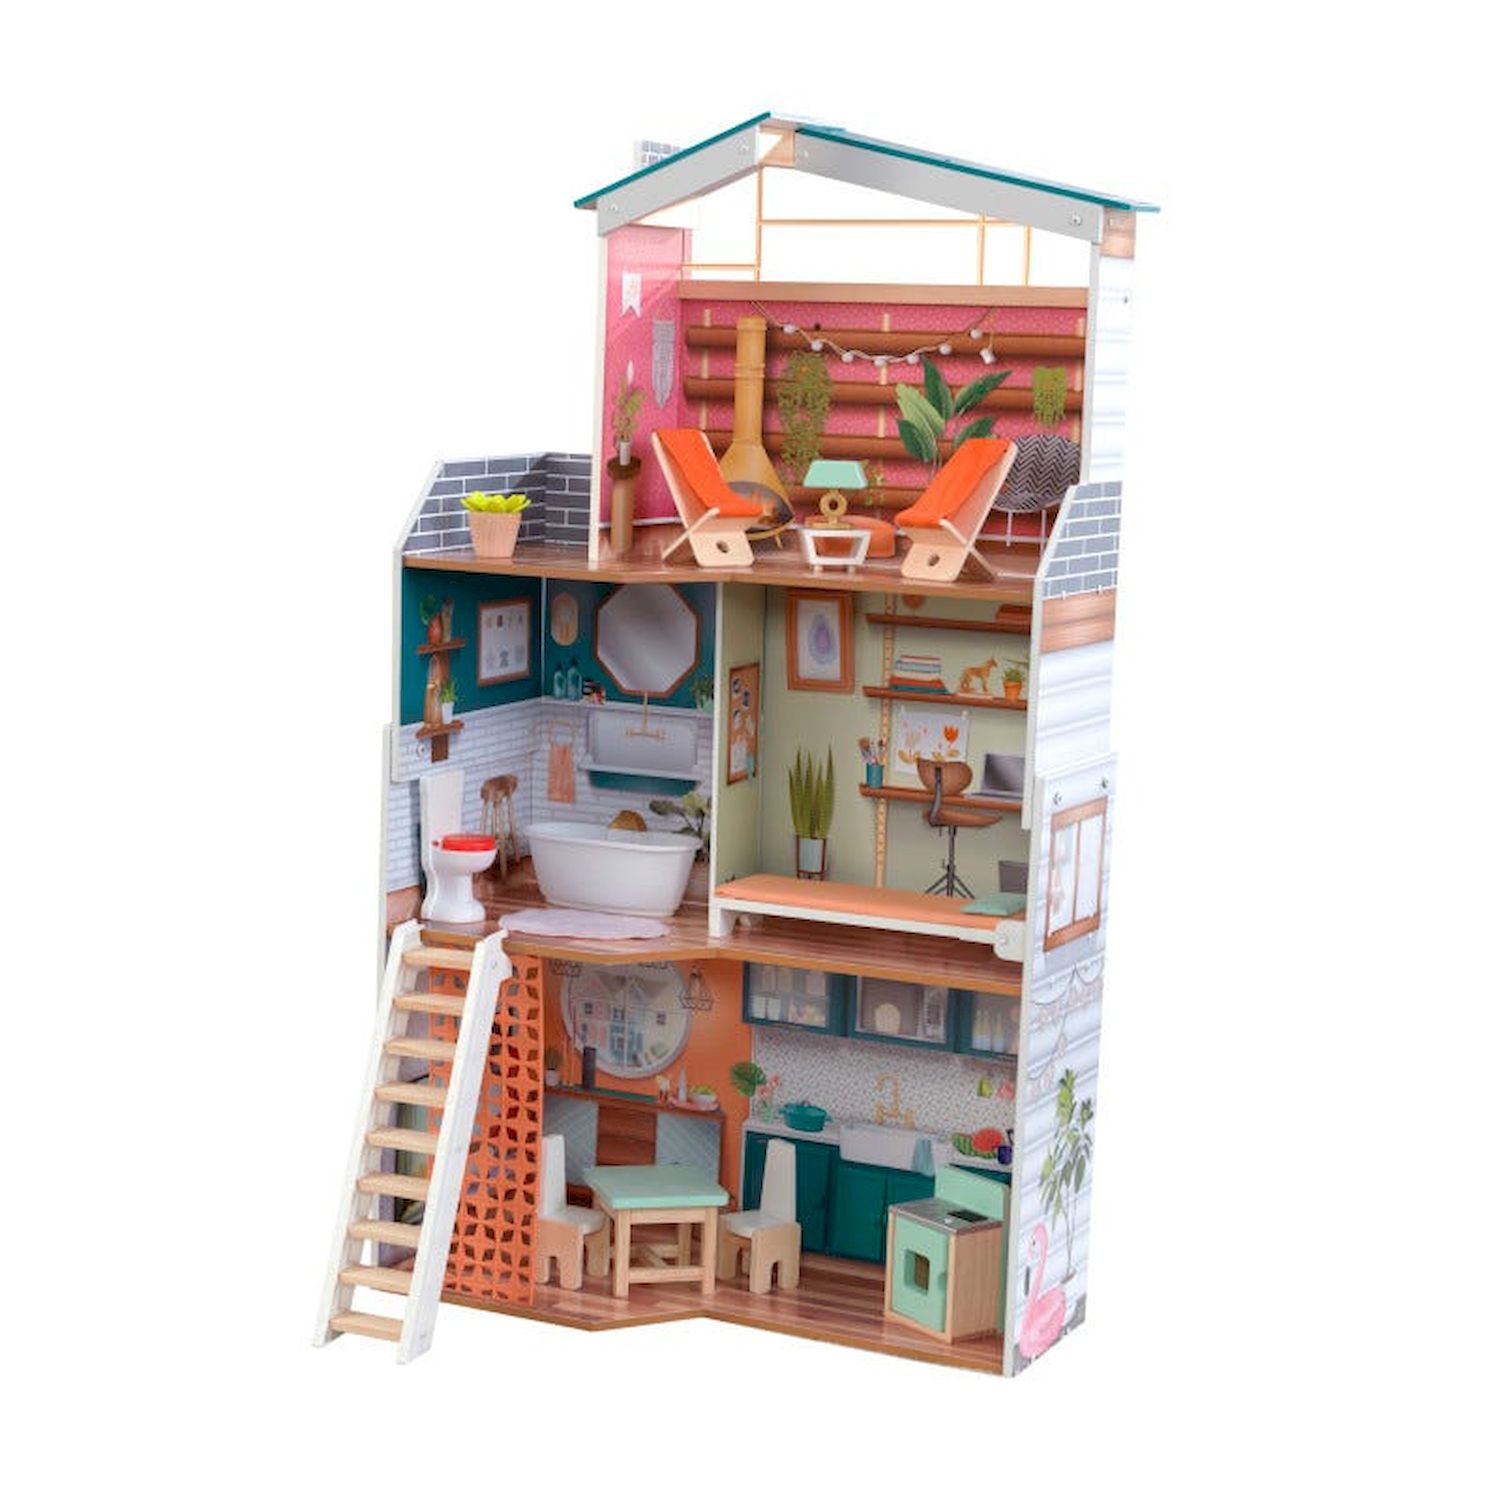 Кукольный домик Марлоу, с мебелью 14 элементов KidKraft 65985_KE кукольный мир город зайцевград часть 1